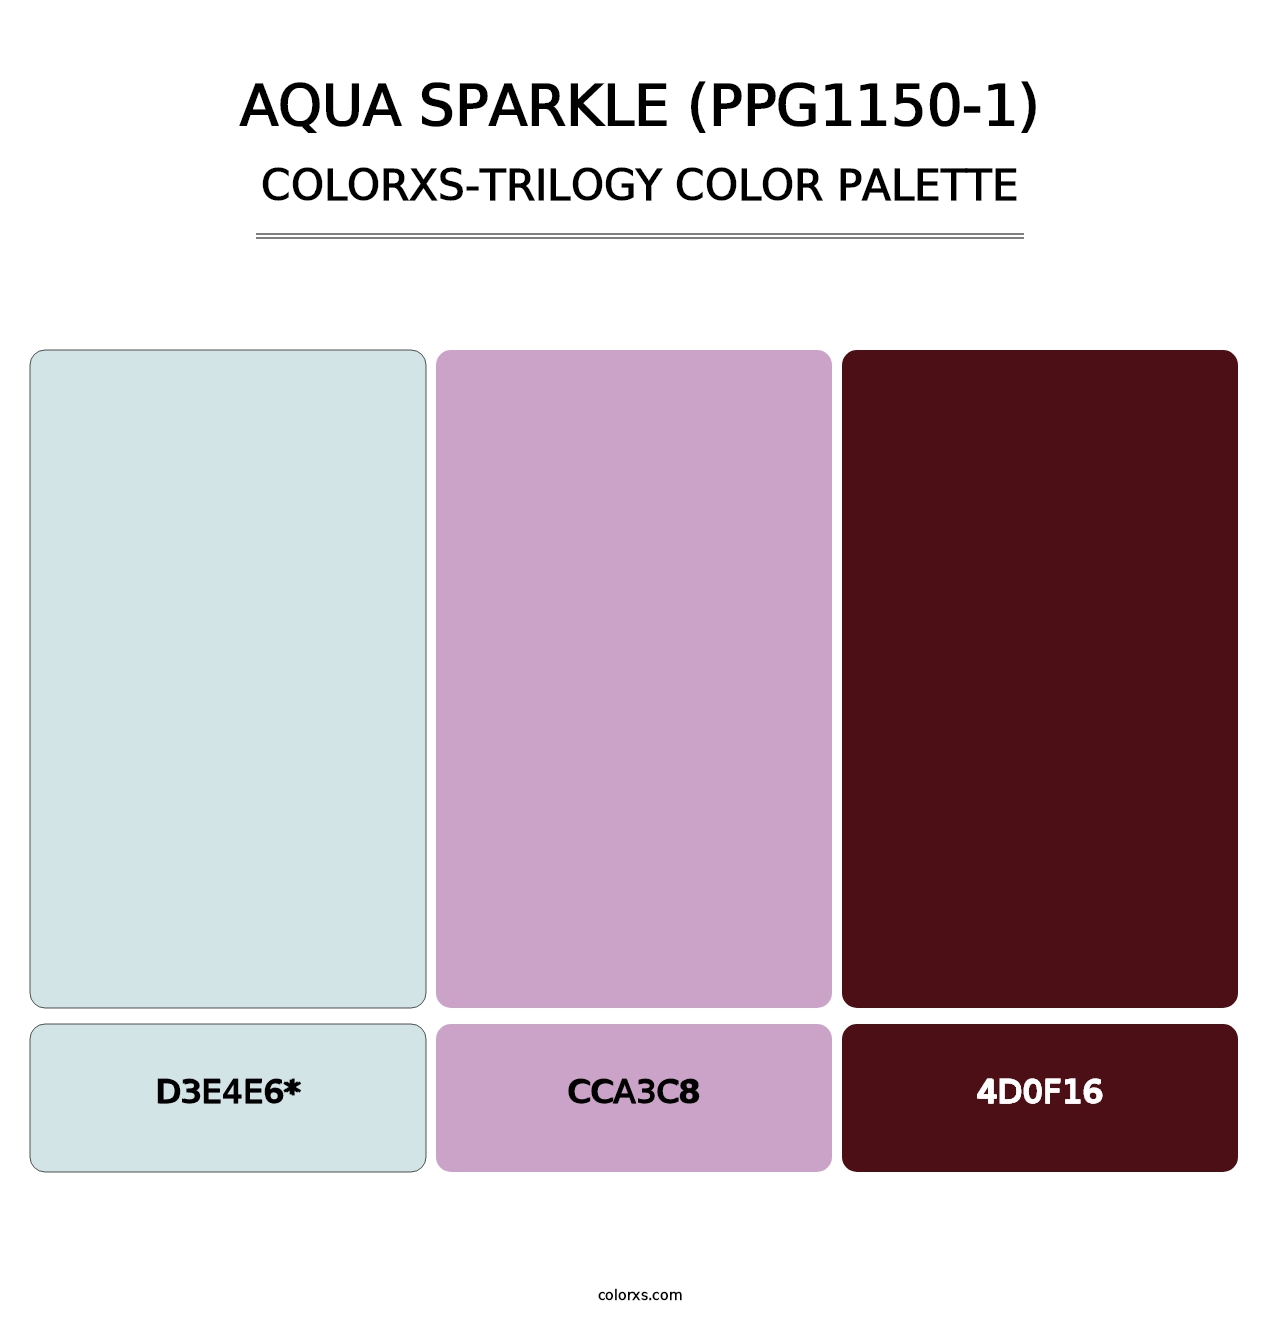 Aqua Sparkle (PPG1150-1) - Colorxs Trilogy Palette